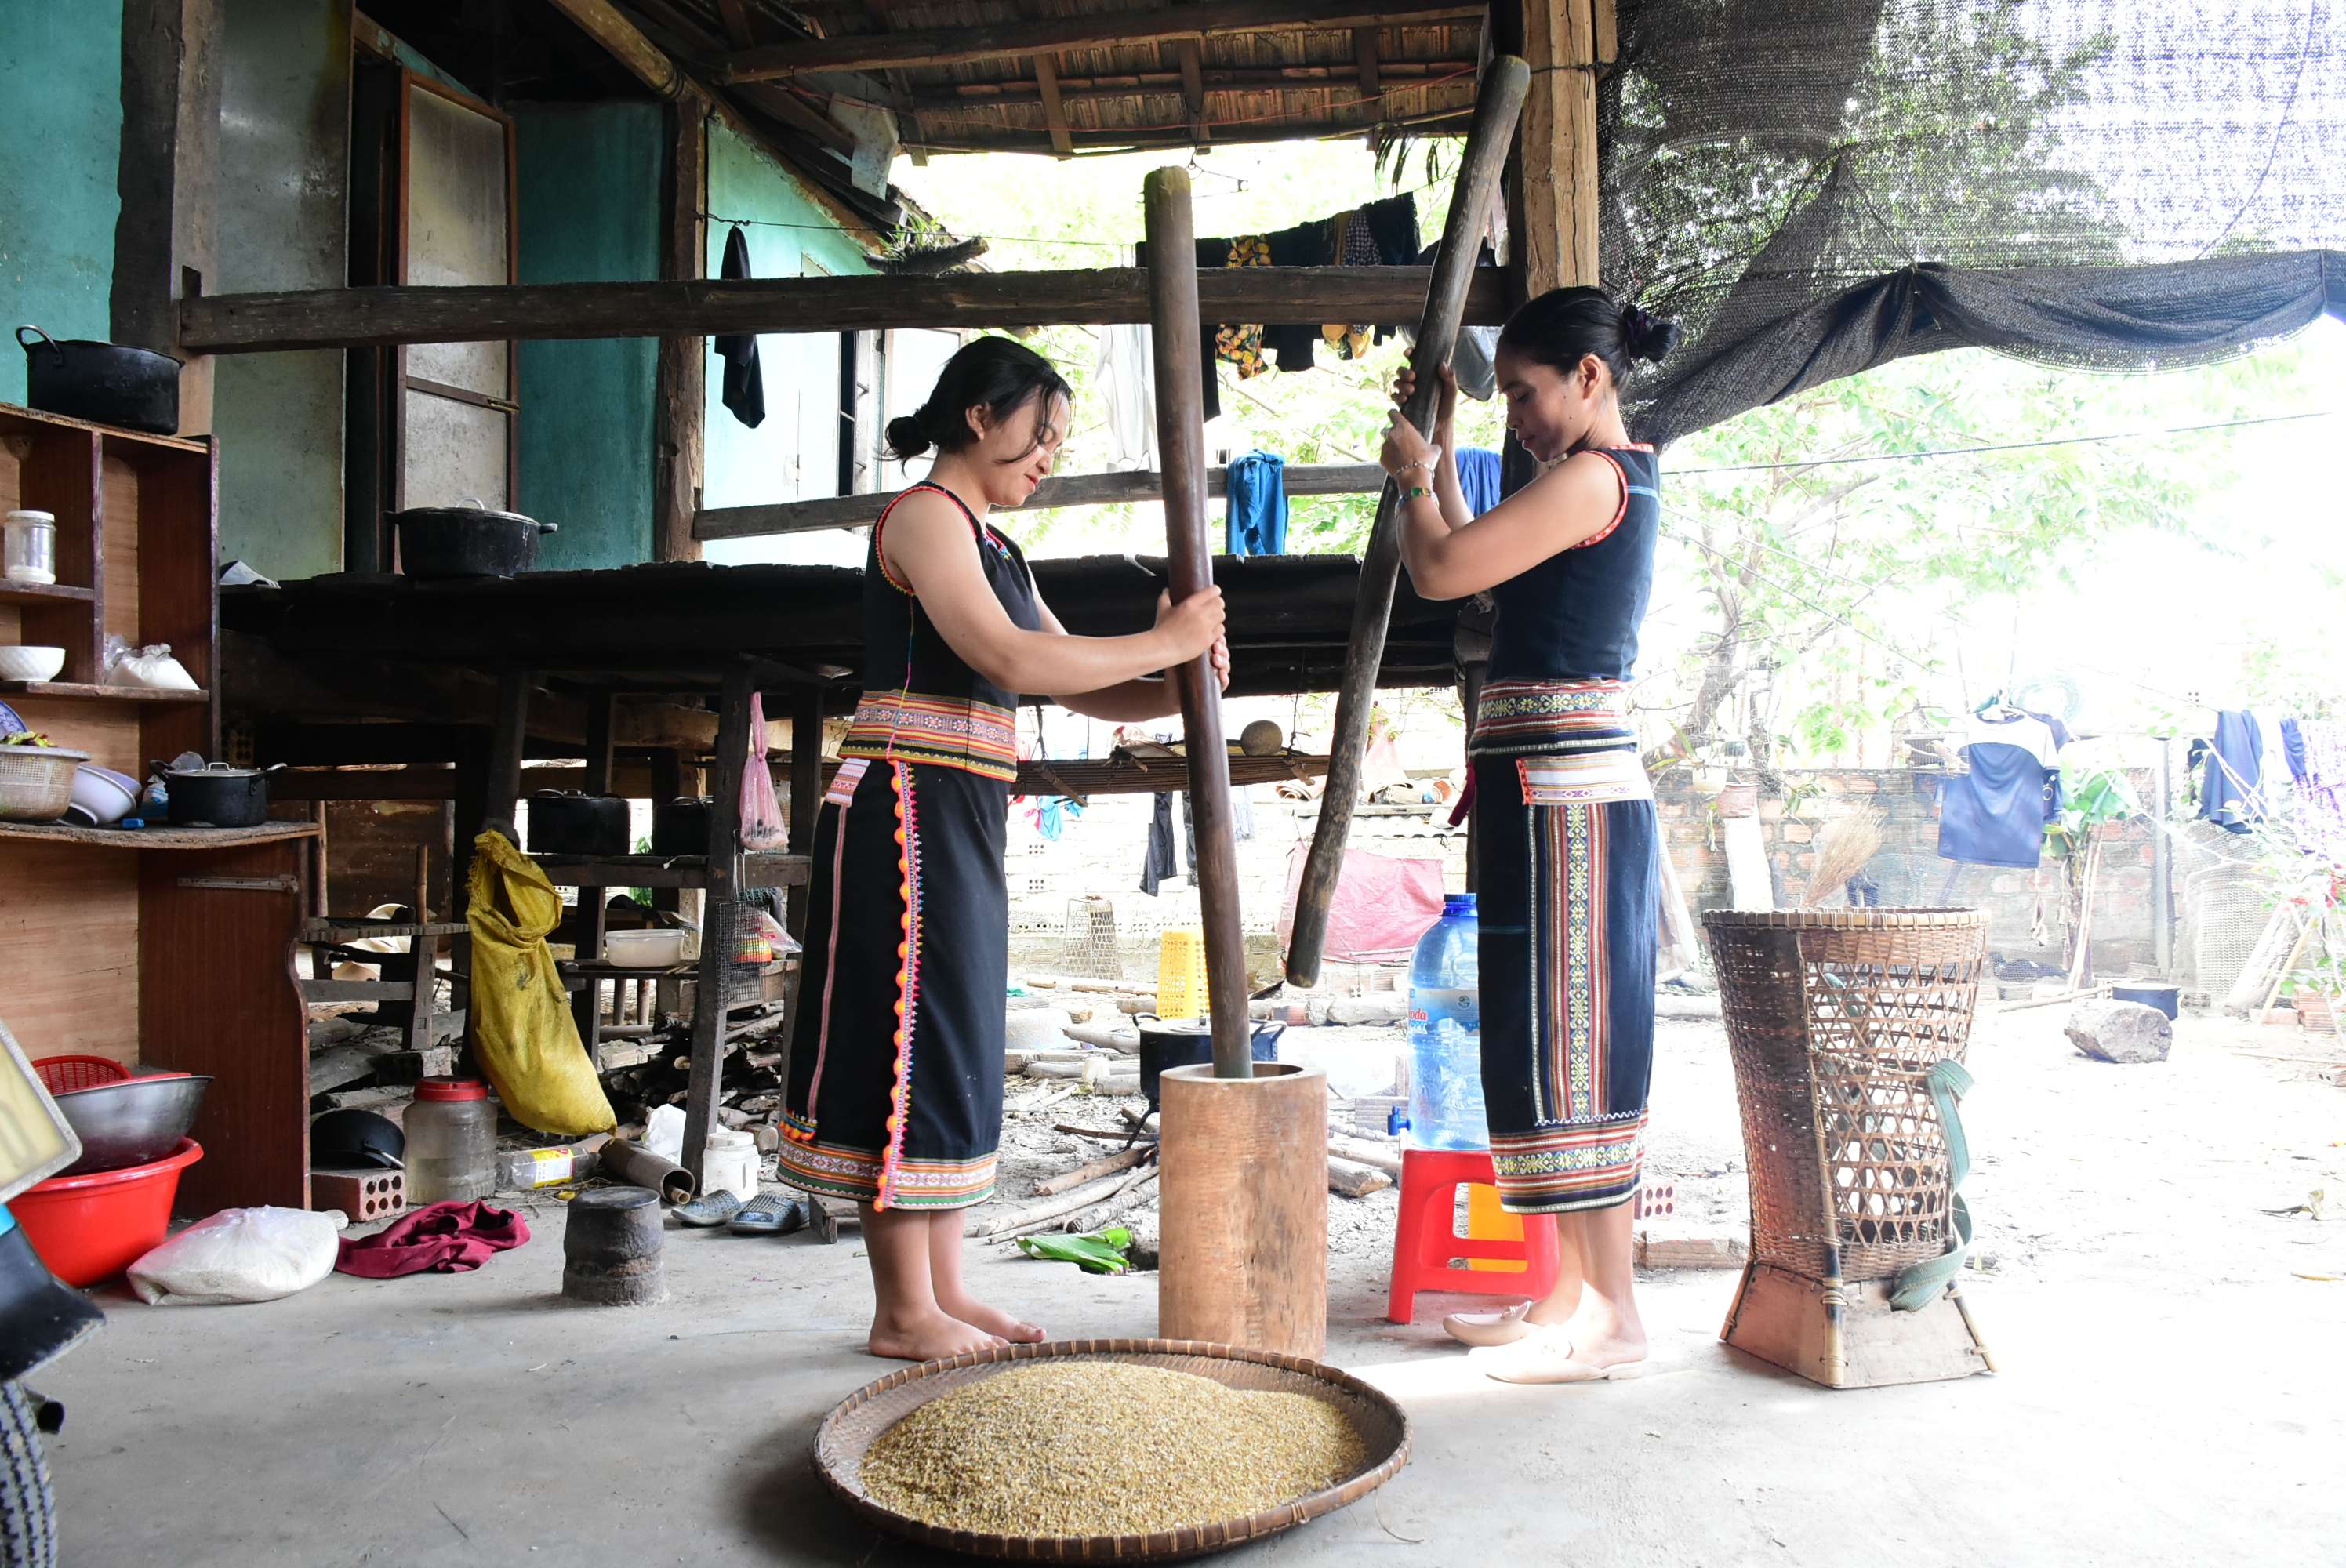 Giã gạo là công việc thường ngày của chị em phụ nữ ở làng Kon Jơ Dreh. Ảnh: H.T